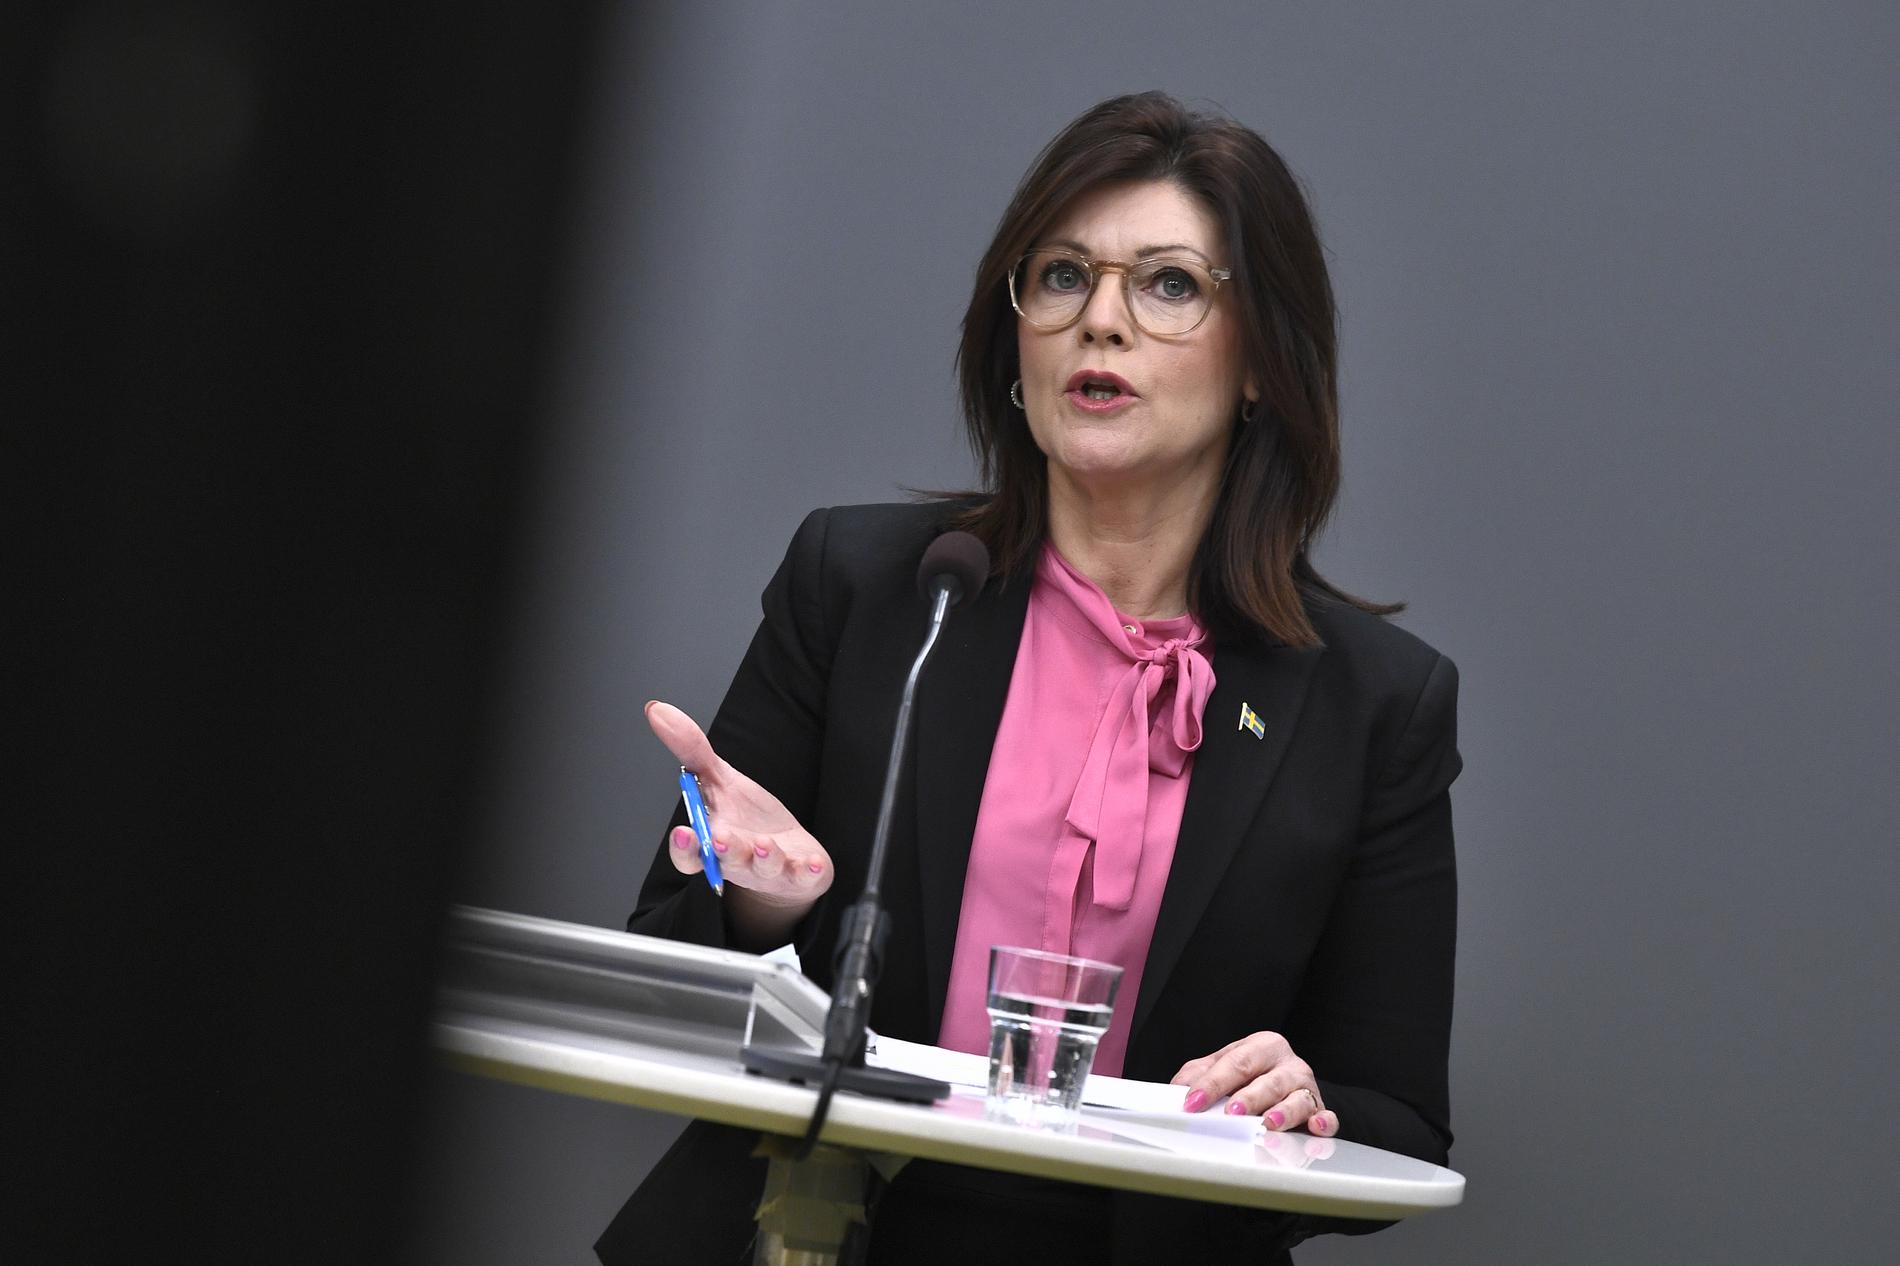 Arbetsmarknadsminister Eva Nordmark (S) har nu lagt fram hur utredningsarbetet kring las ska fortsätta.